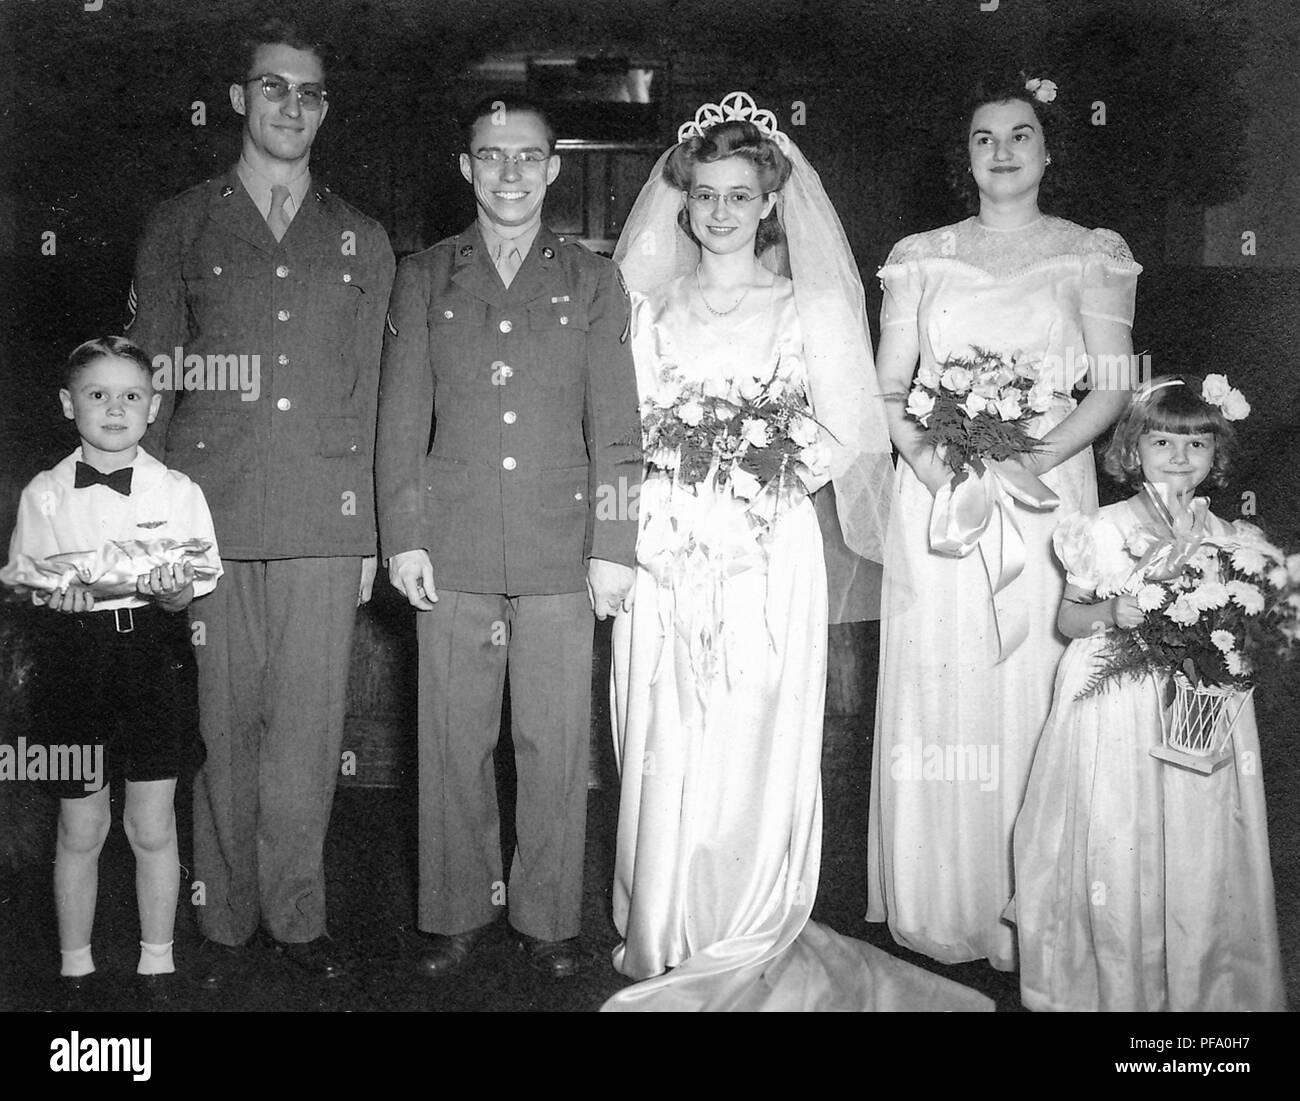 Schwarz-weiß Foto, zeigt ein Bräutigam in eine militärische Uniform und Gläser, neben einem Braut trug ein weißes Kleid, Schleier, Tiara, und Gläser, durch den besten Mann flankiert (auch in Uniform) und eine junge Ring bearer auf der Linken, die Mädchen der Ehre und eine junge BRAUTJUNGFER (beide mit Blumen) auf der rechten Seite, in Ohio, 1945 fotografiert. () Stockfoto